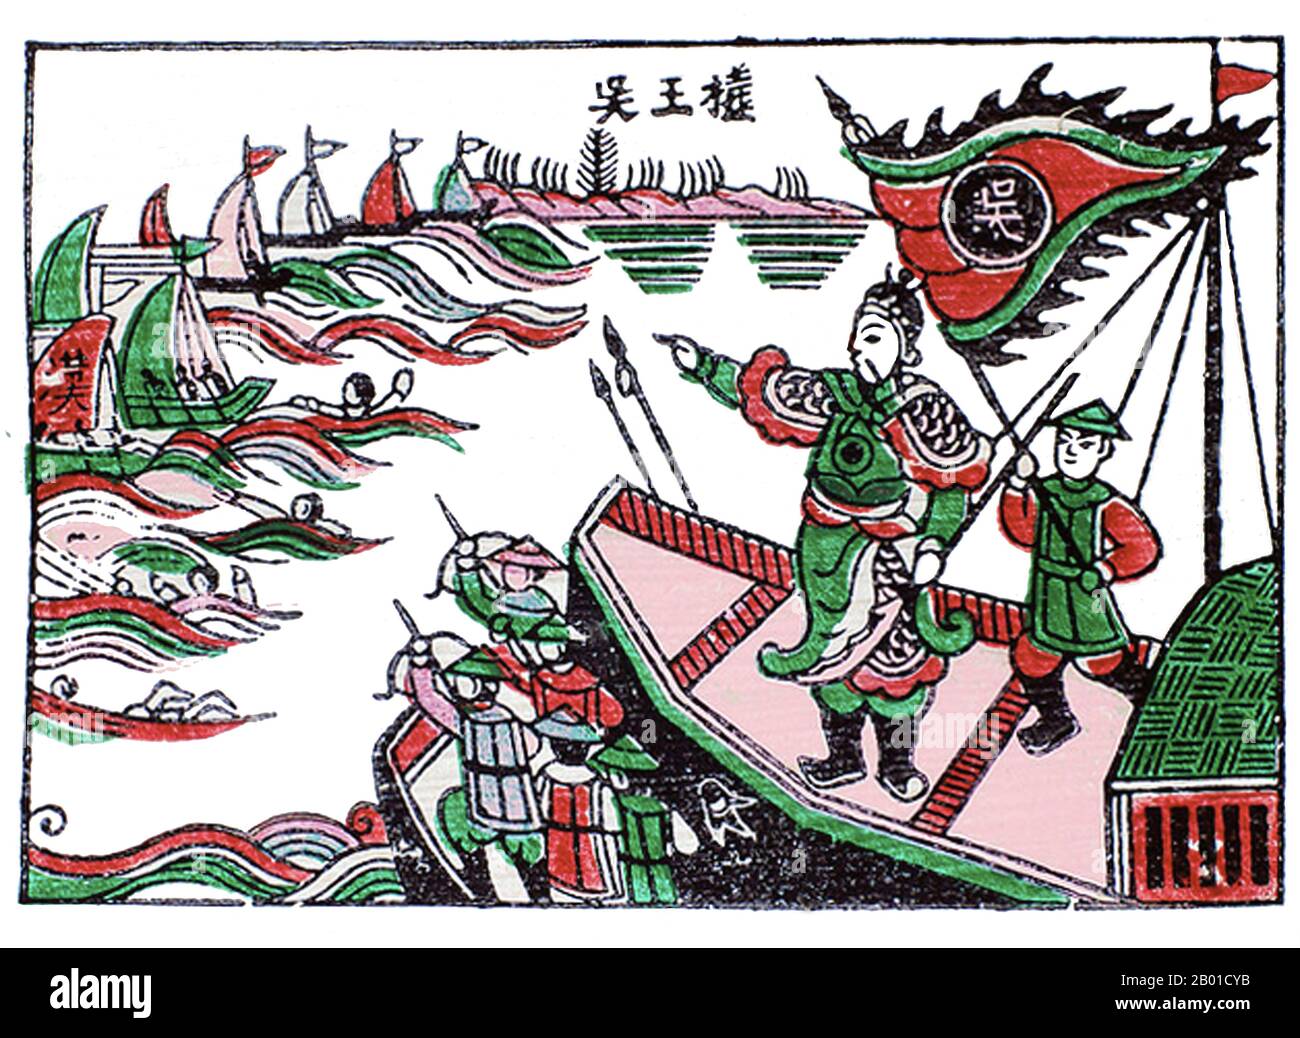 Lors de la bataille de la rivière Bạch Đằng en 938, les forces vietnamiennes, dirigées par Ngô Quyền, ont vaincu les forces d'invasion de l'état de Han Sud de la Chine et mis fin à des siècles de domination impériale chinoise au Vietnam. Il a eu lieu à la rivière Bach Dang, près de la baie de Halong, dans le nord du Vietnam. Cette victoire a mis fin à la longue domination de la Chine sur le Vietnam et a commencé une période d'indépendance du Vietnam jusqu'à la conquête de Ming Chine. La tactique de Ngô Quyền sera plus tard copiée par Trần Hưng Đạo dans une bataille à la rivière Bạch Đằng contre les Mongols en 1288. Banque D'Images